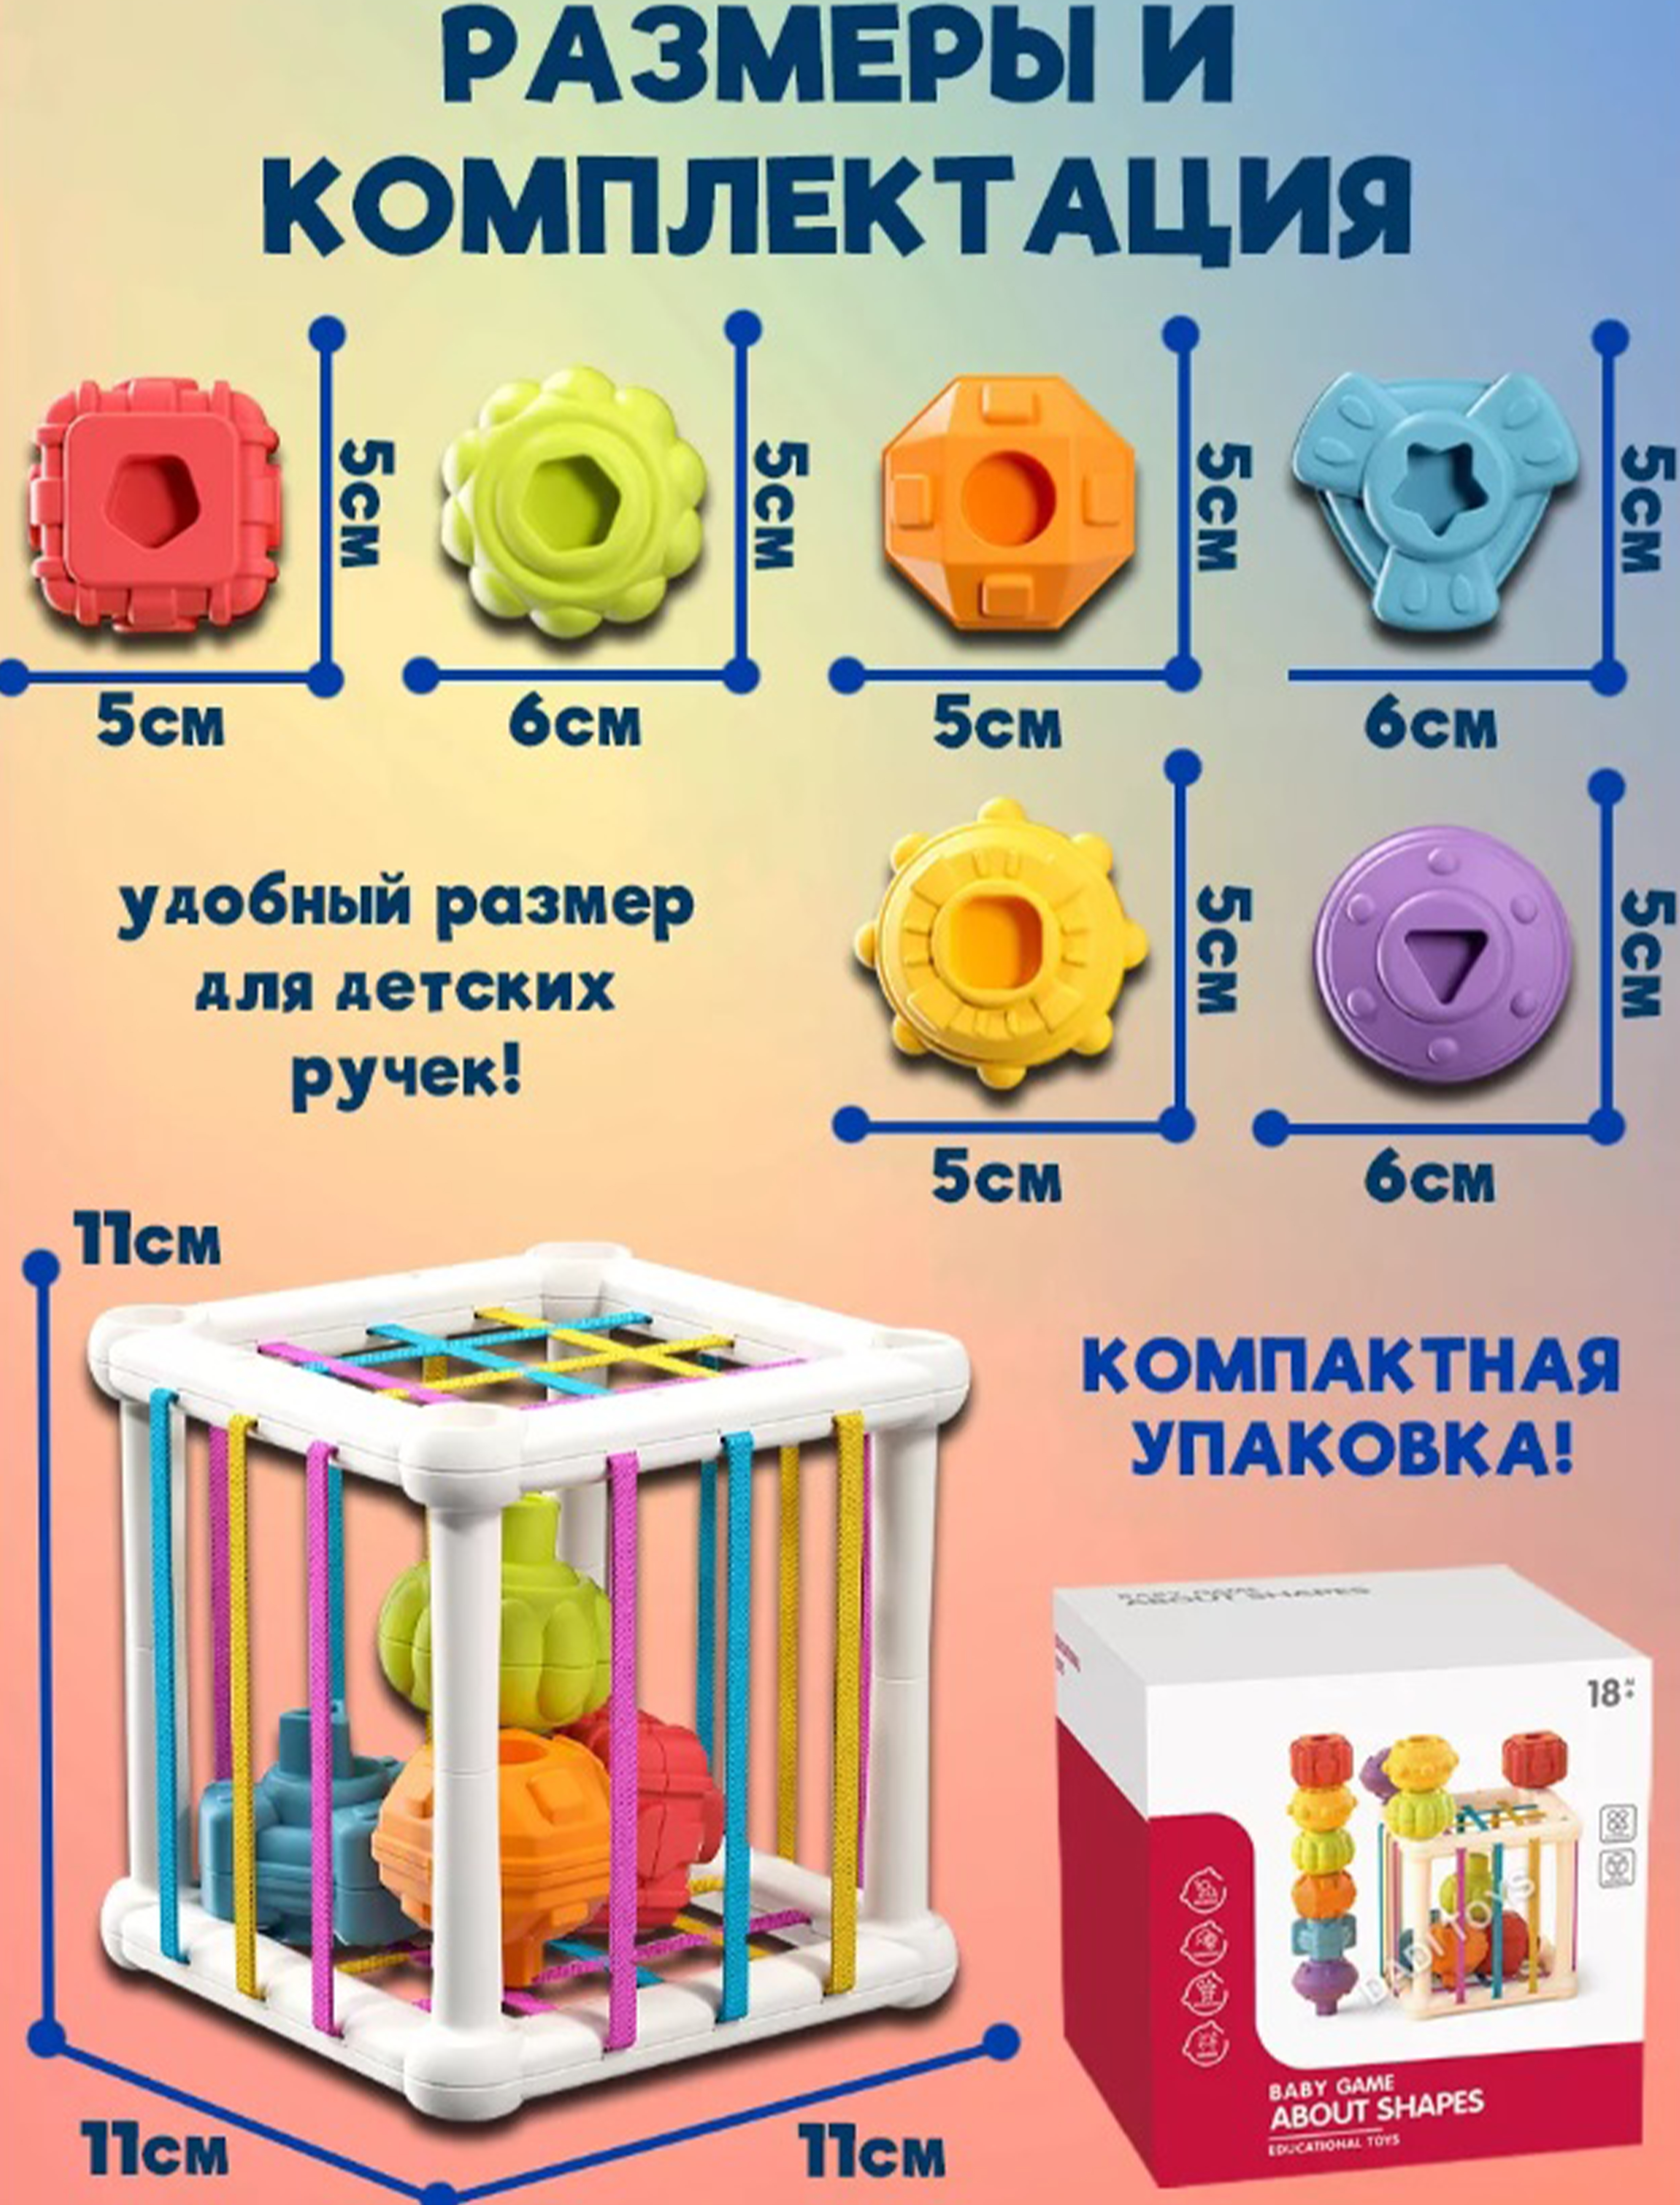 Сортер Монтессори ТОТОША развивающая игрушка для детей и новорождённых - фото 3